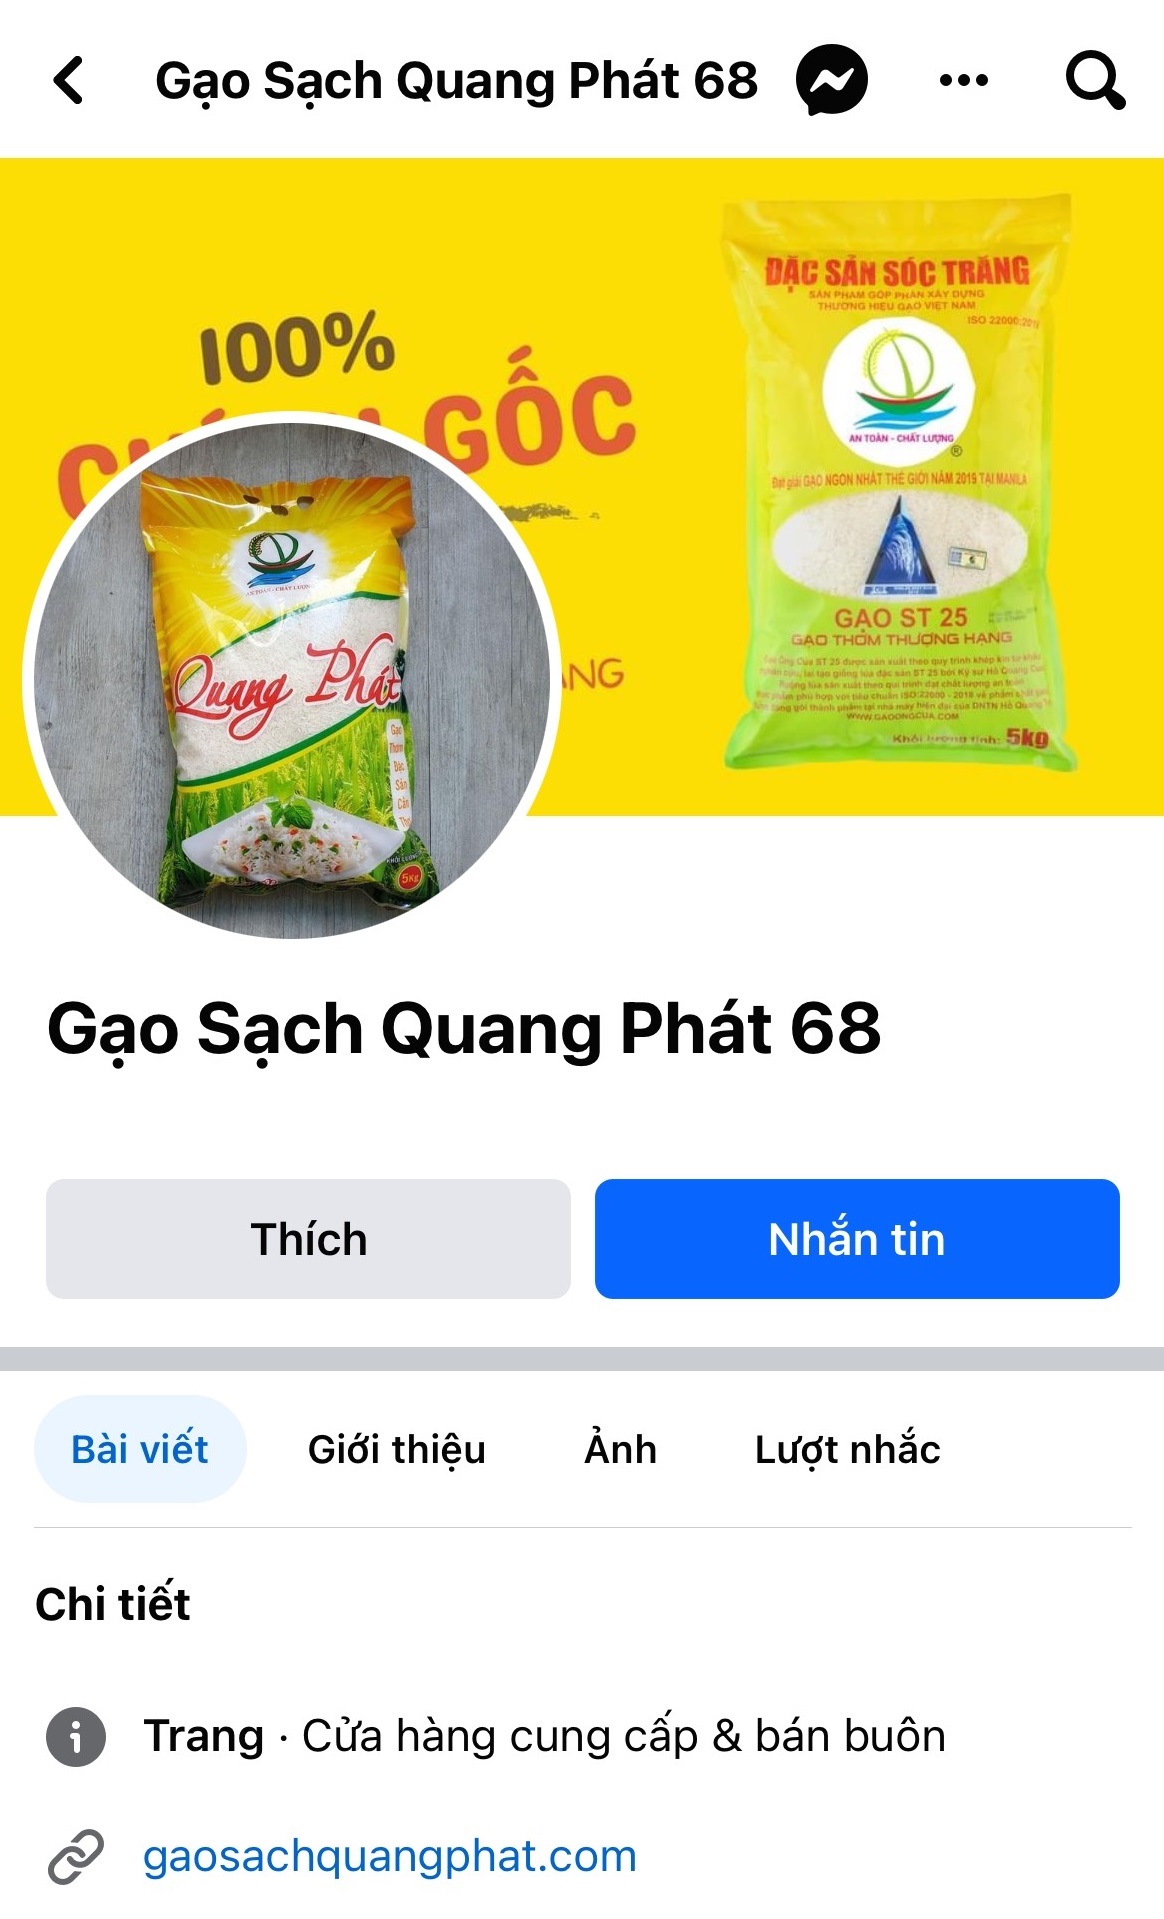 Trang chính thức Gạo Sạch Quang Phát 68.